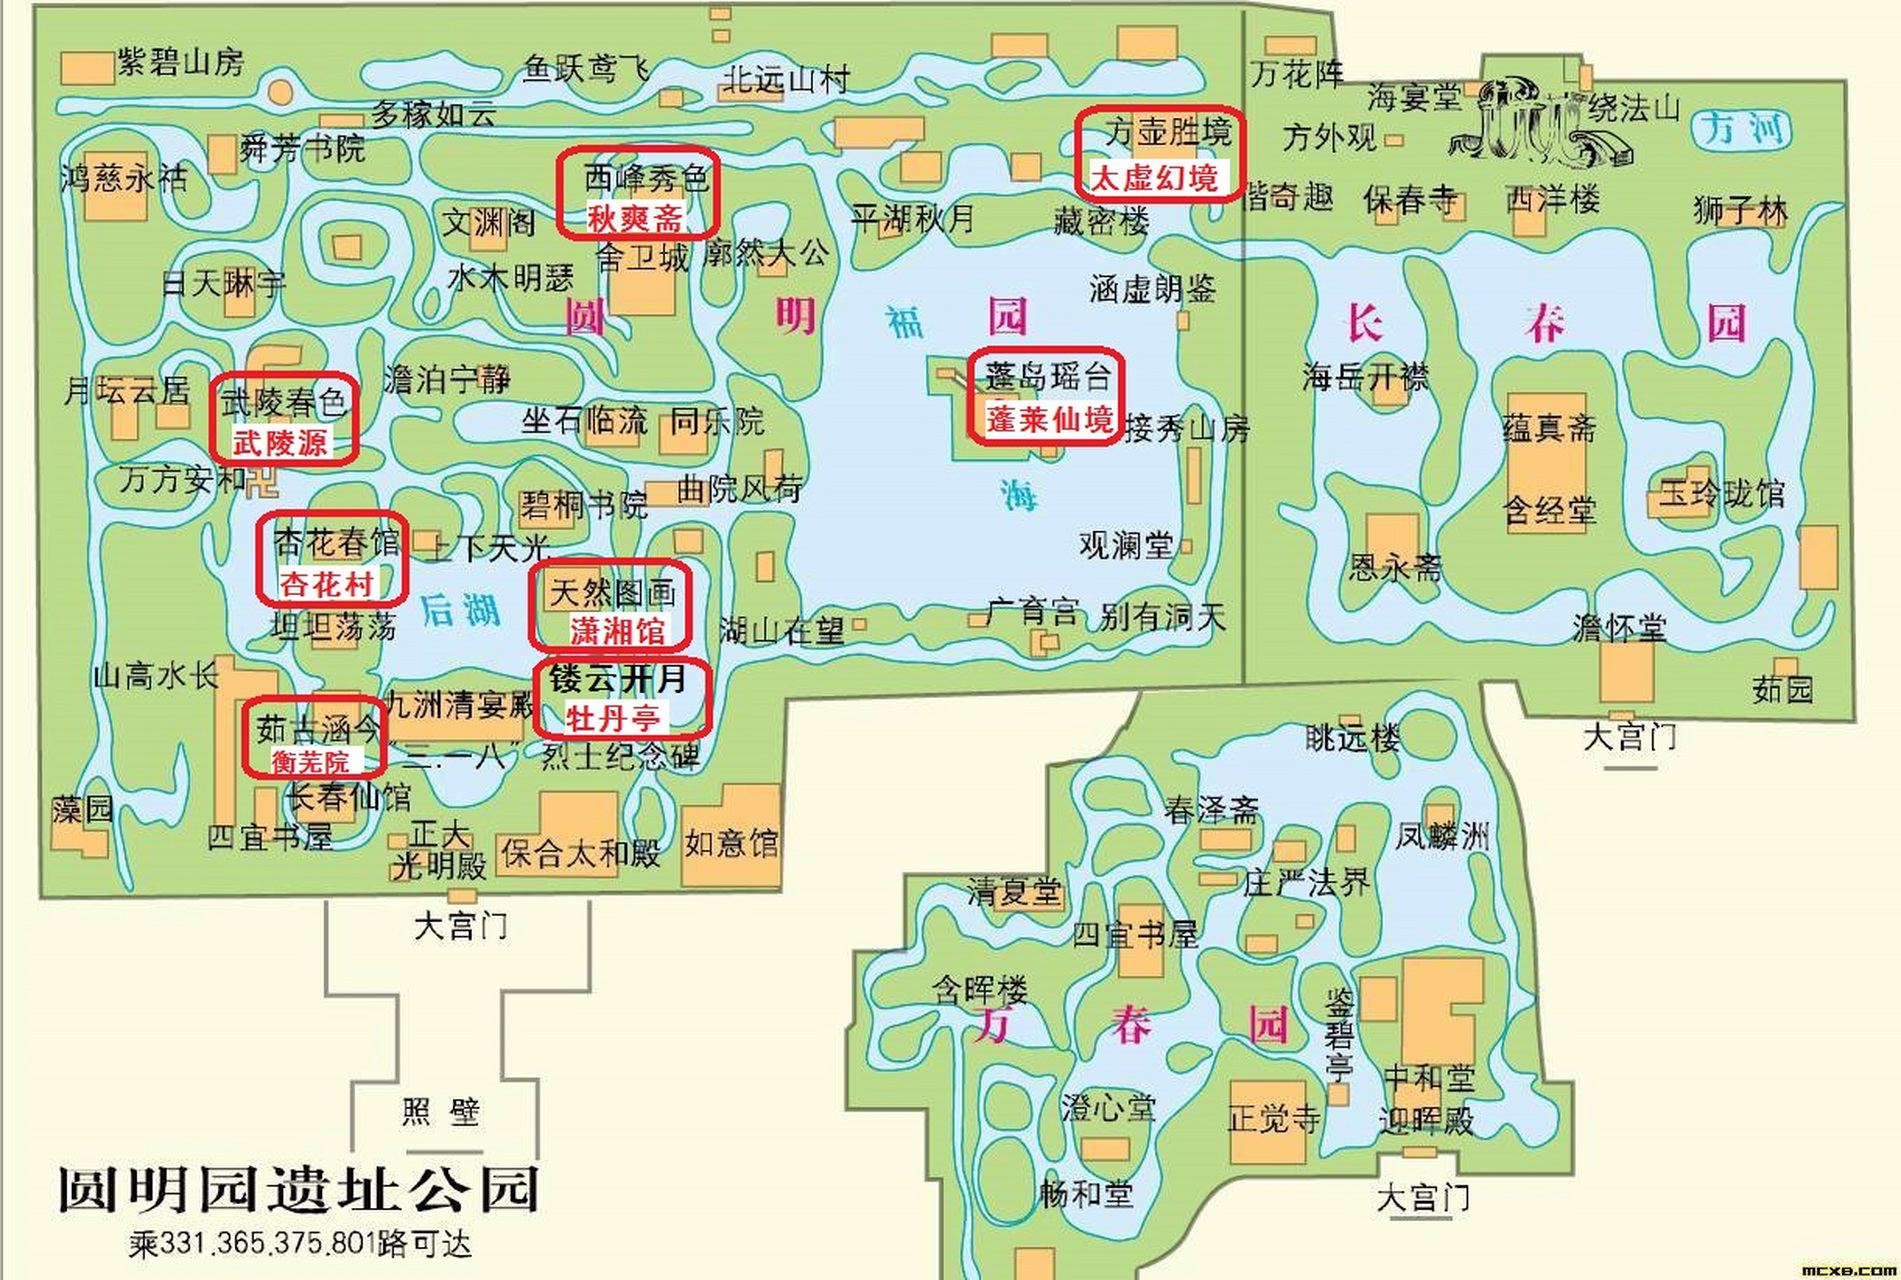 问一下万能的网友,下面这两张紫禁城和圆明园的平面图,版权方是谁